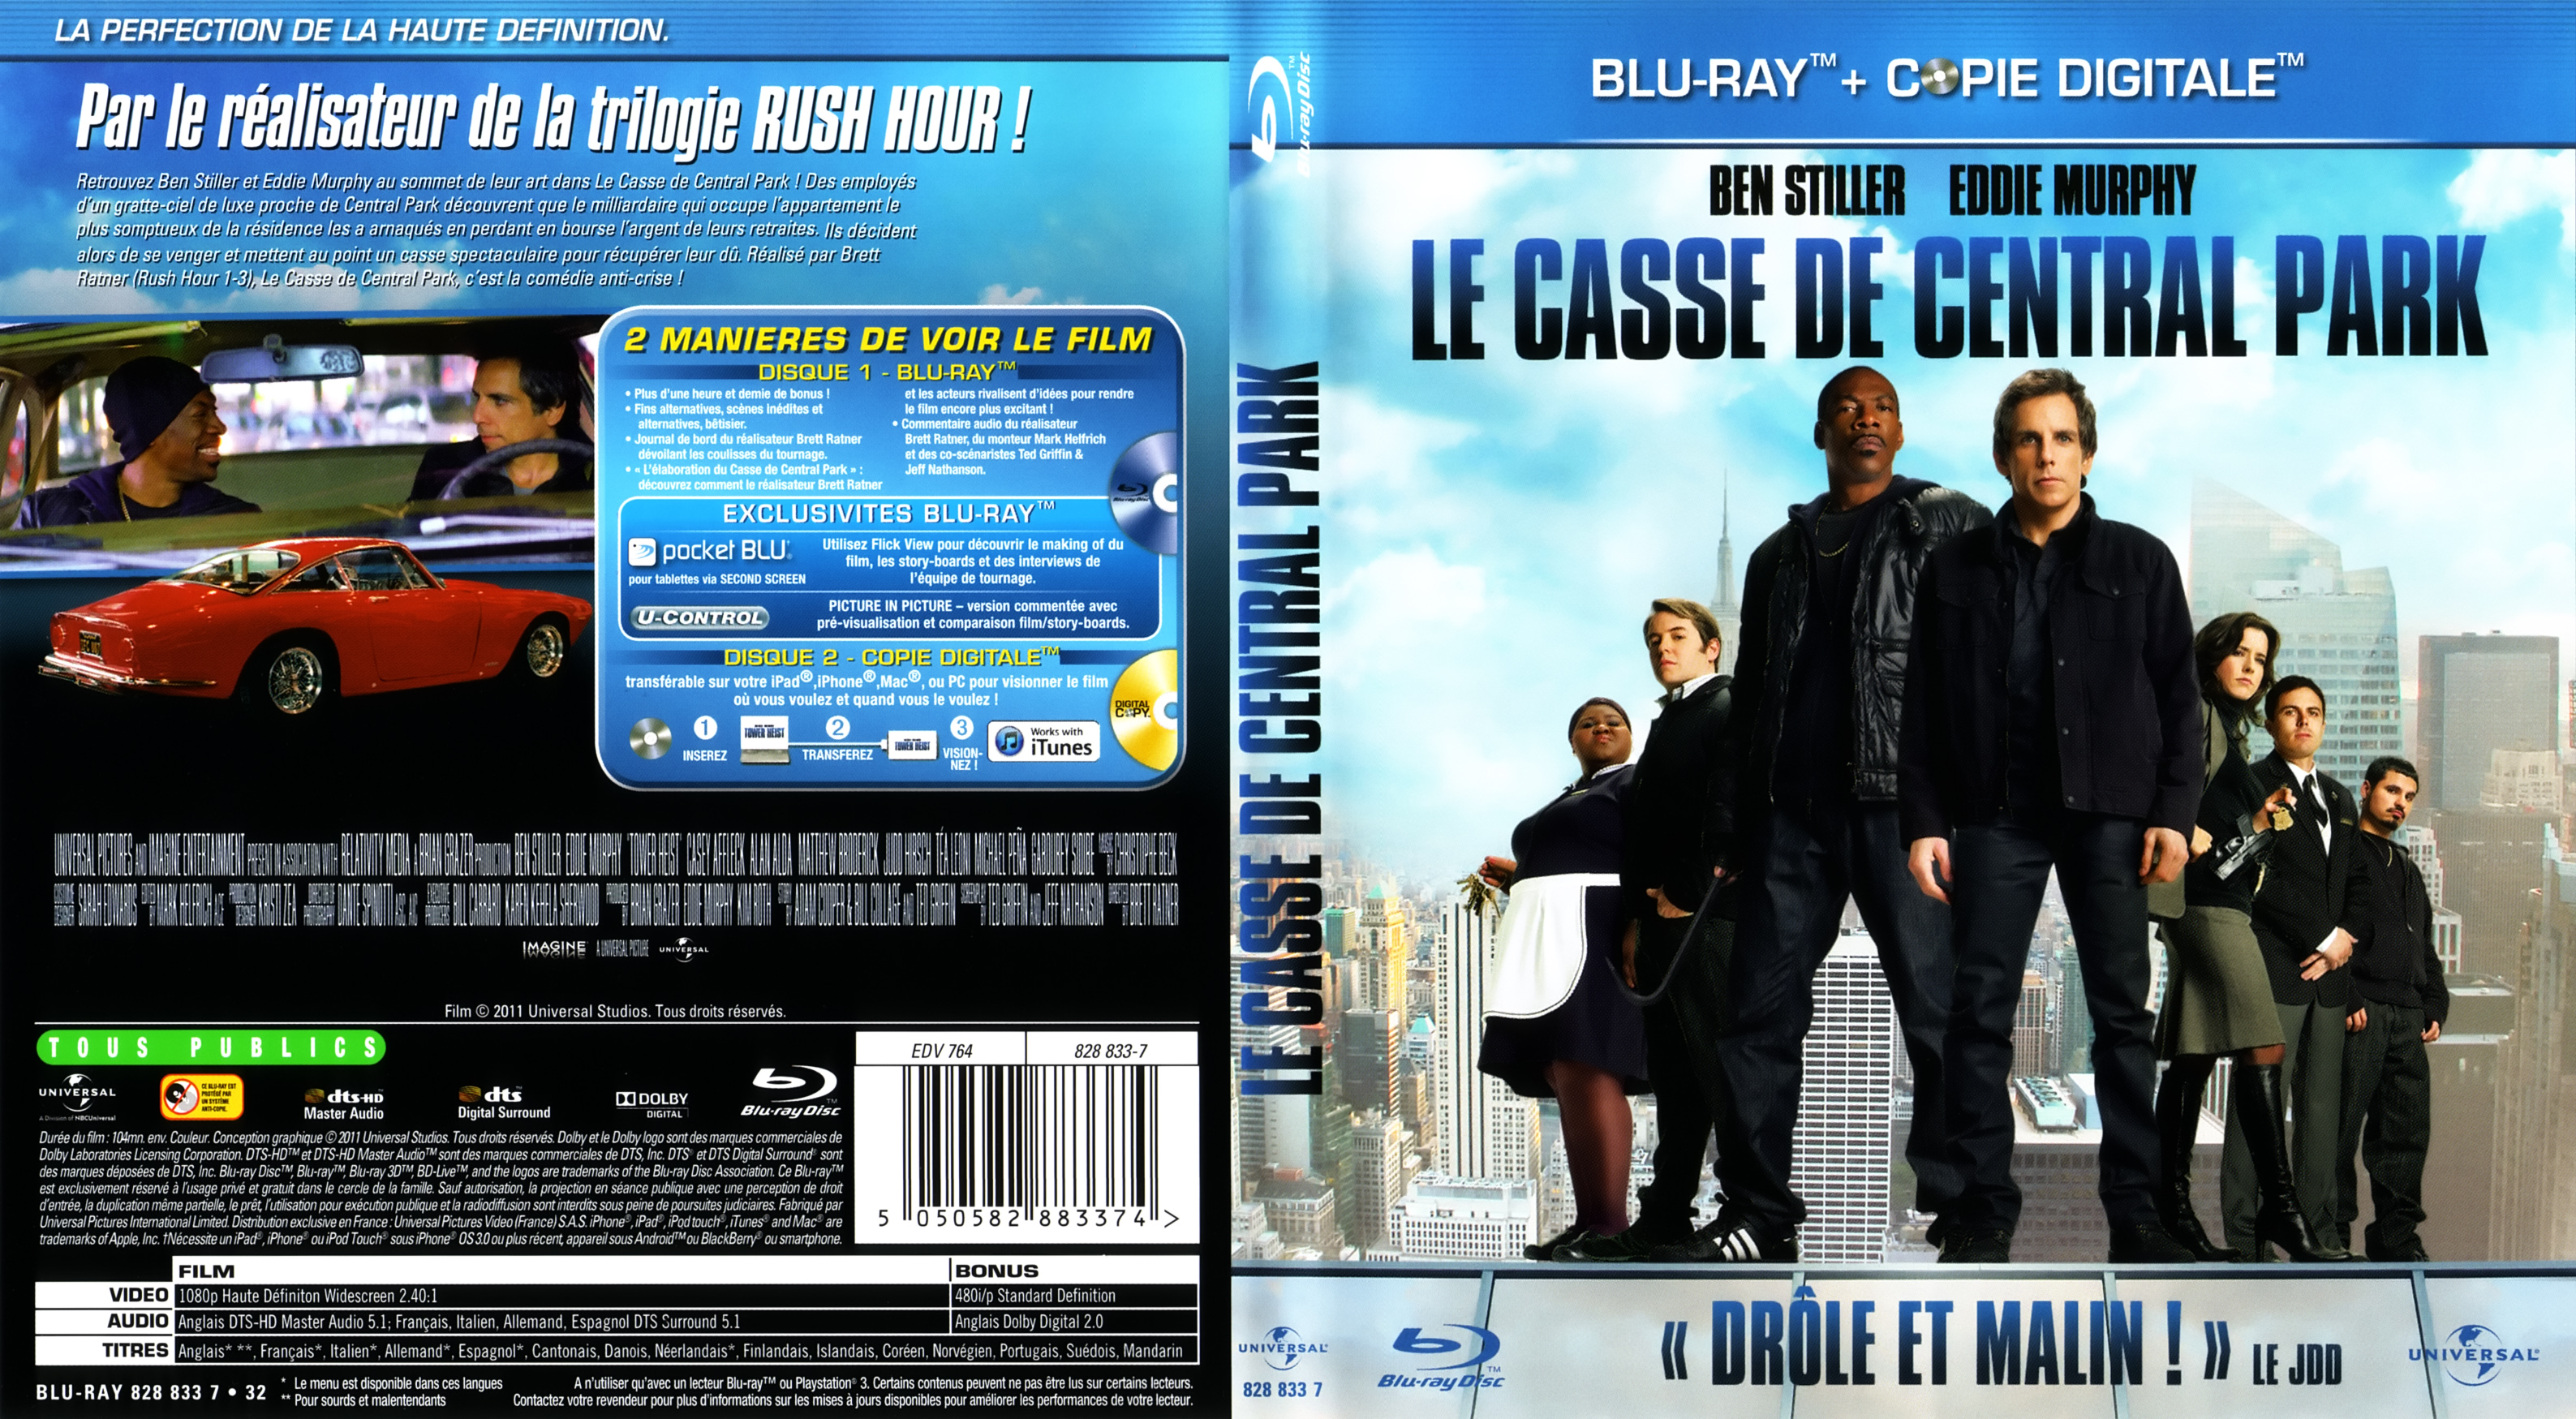 Jaquette DVD Le Casse De Central Park (BLU-RAY)